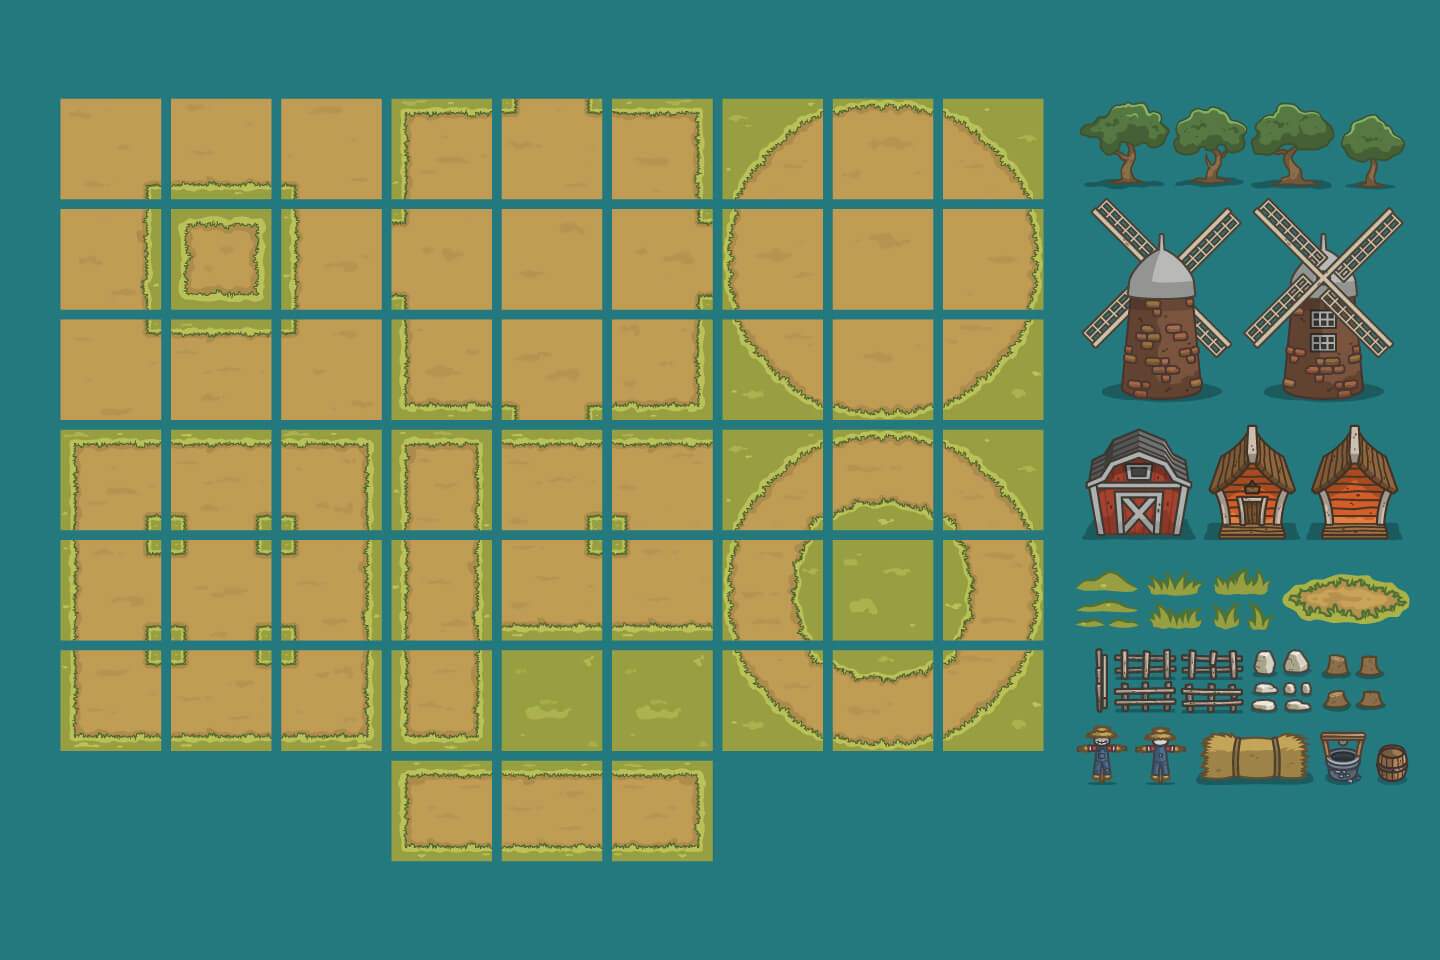 summer-farm-top-down-2d-game-tileset-craftpix